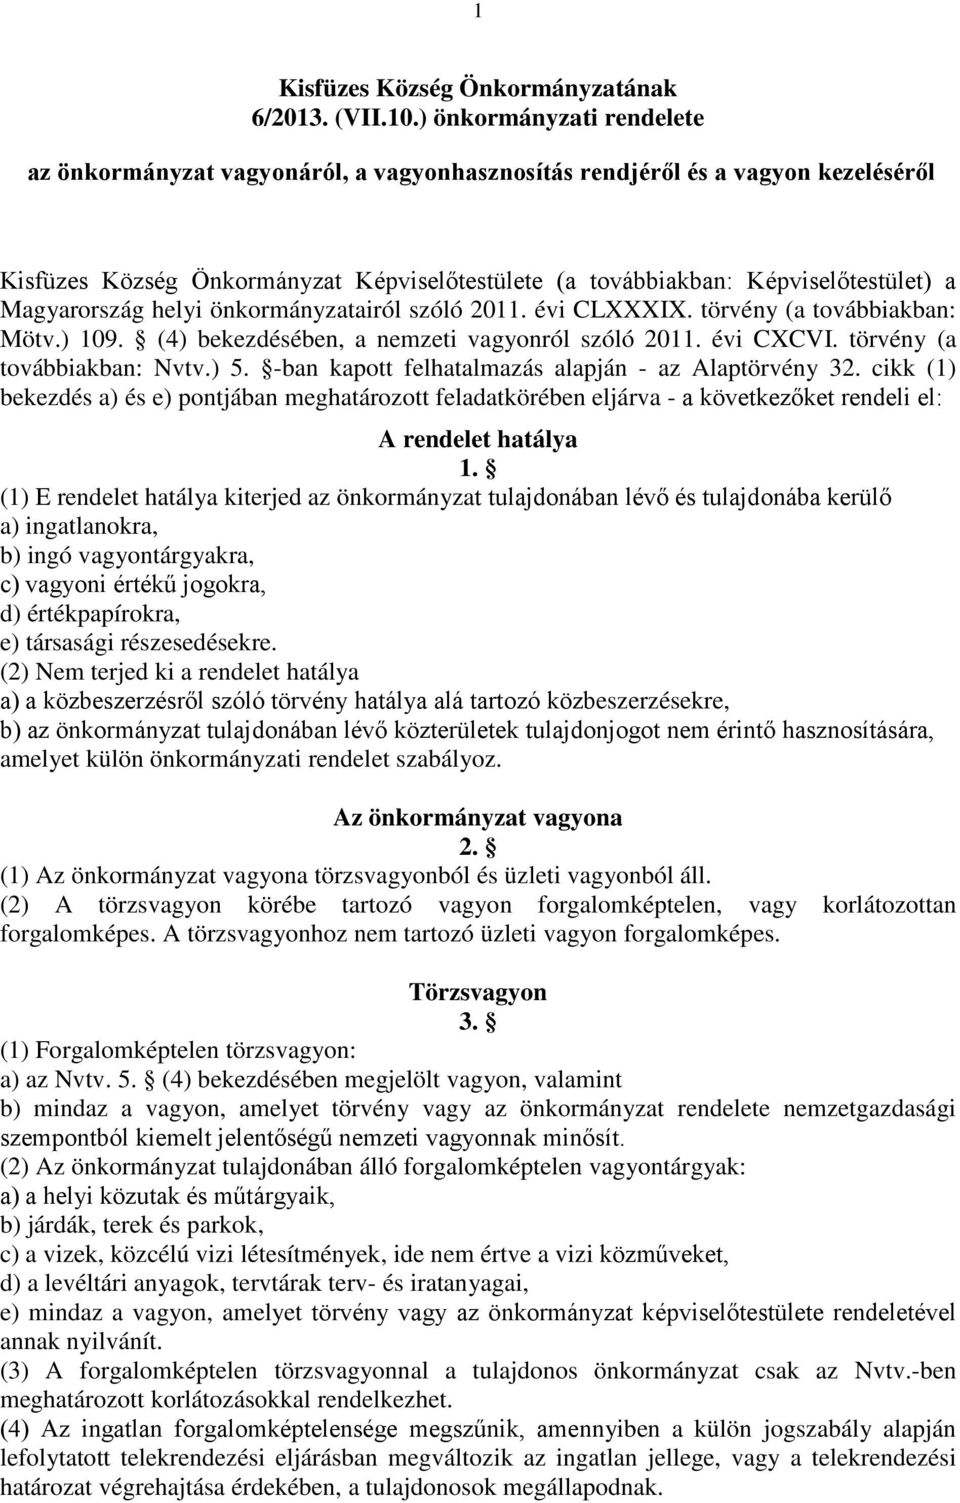 Magyarország helyi önkormányzatairól szóló 2011. évi CLXXXIX. törvény (a továbbiakban: Mötv.) 109. (4) bekezdésében, a nemzeti vagyonról szóló 2011. évi CXCVI. törvény (a továbbiakban: Nvtv.) 5.